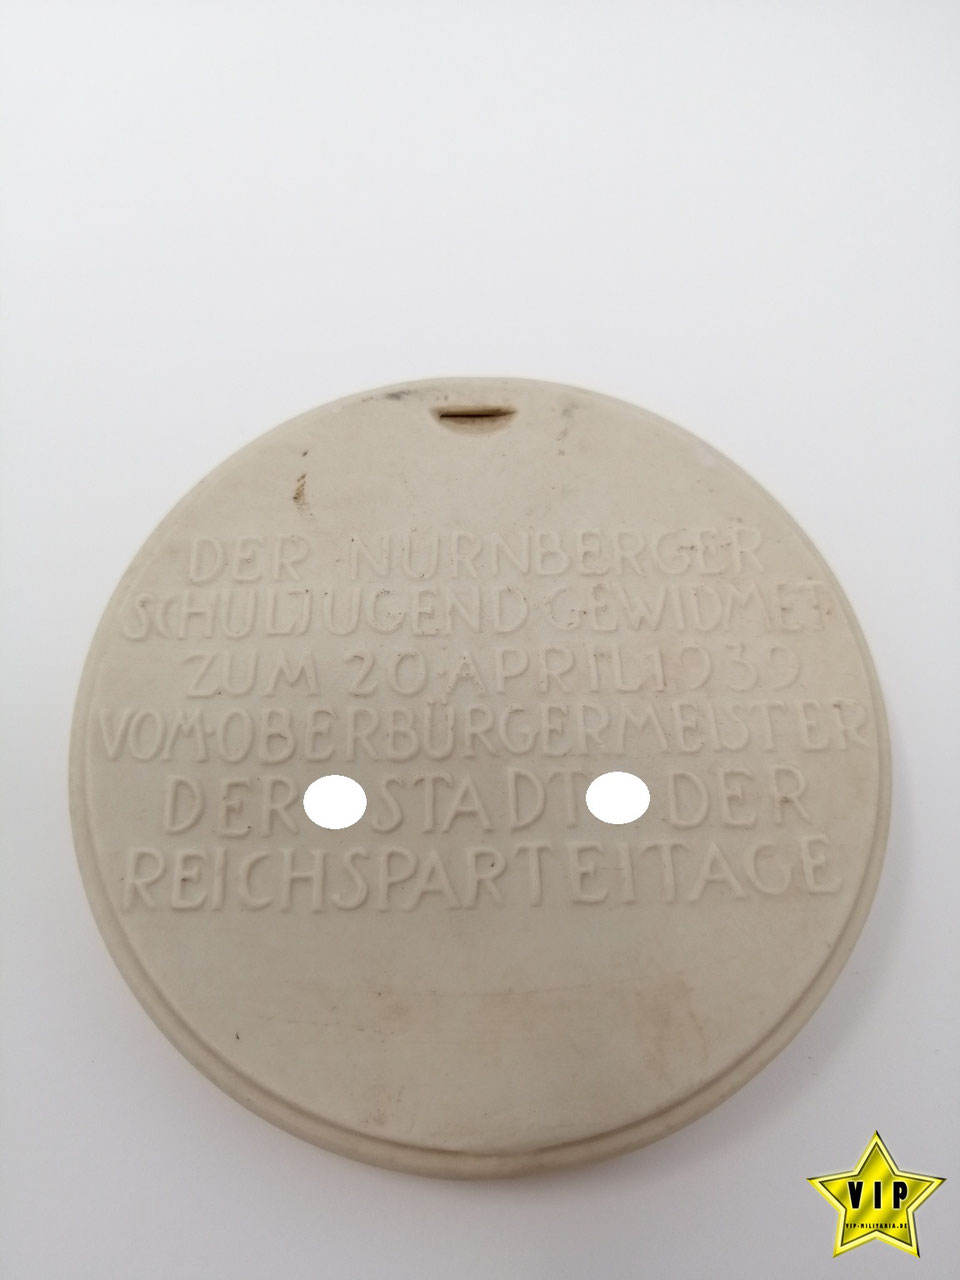 3. Reich Porzellan- Erinnerungsplakette " Der Nürnberger Schuljugend "